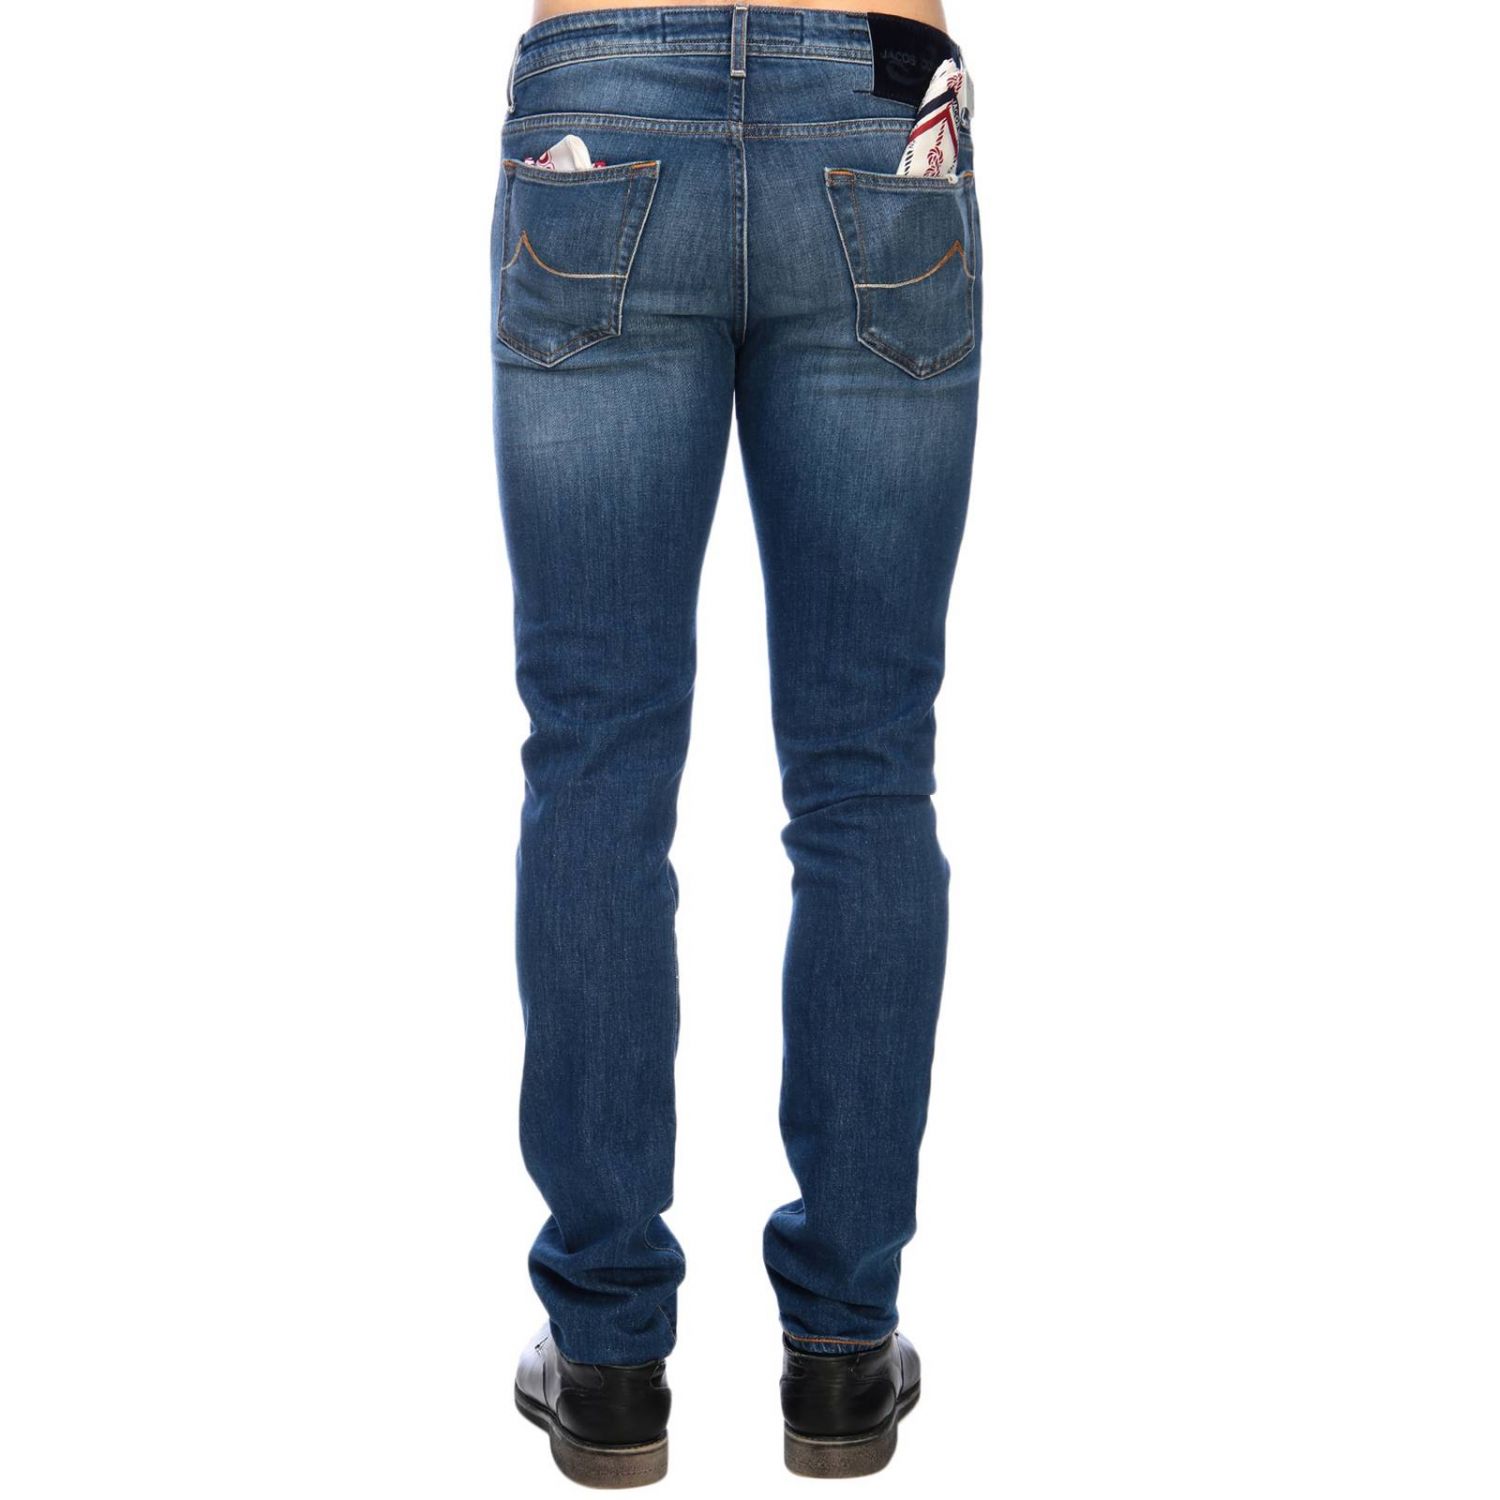 Jacob Cohen Outlet: jeans for man - Blue | Jacob Cohen jeans J688 COMF ...